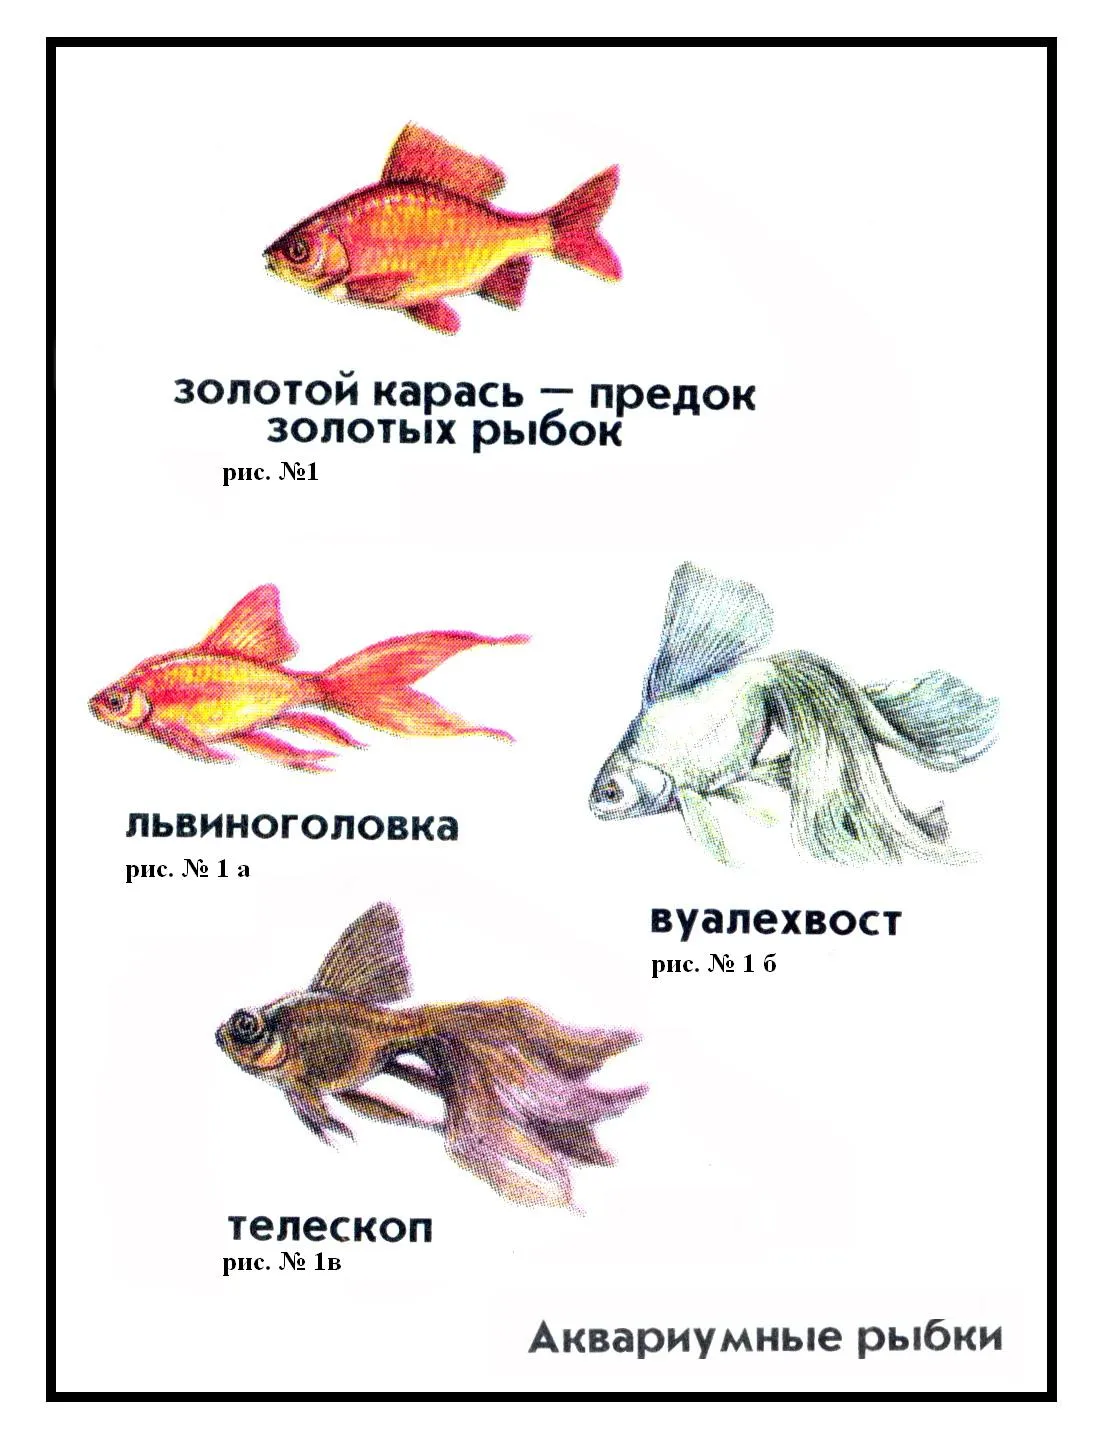 Аквариумные рыбы для детей. Аквариумные рыбки для детей. Аквариумные рыбки с названиями для детей. Аквариумные рыбы для детей с названиями. Аквариумные рыбки для дошкольников.